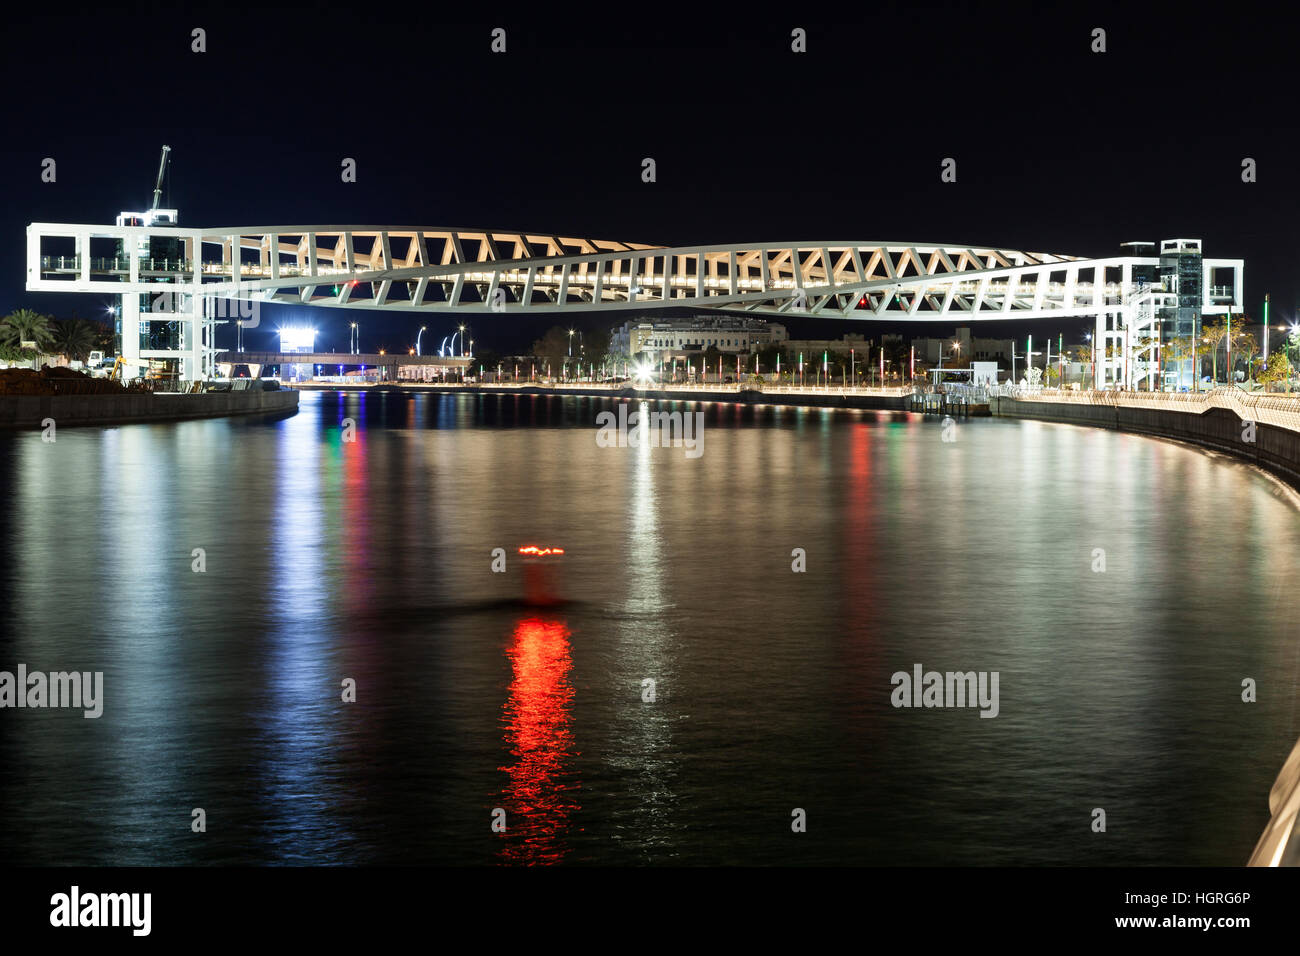 Helix pont sur le canal de nuit de l'eau de Dubaï Banque D'Images